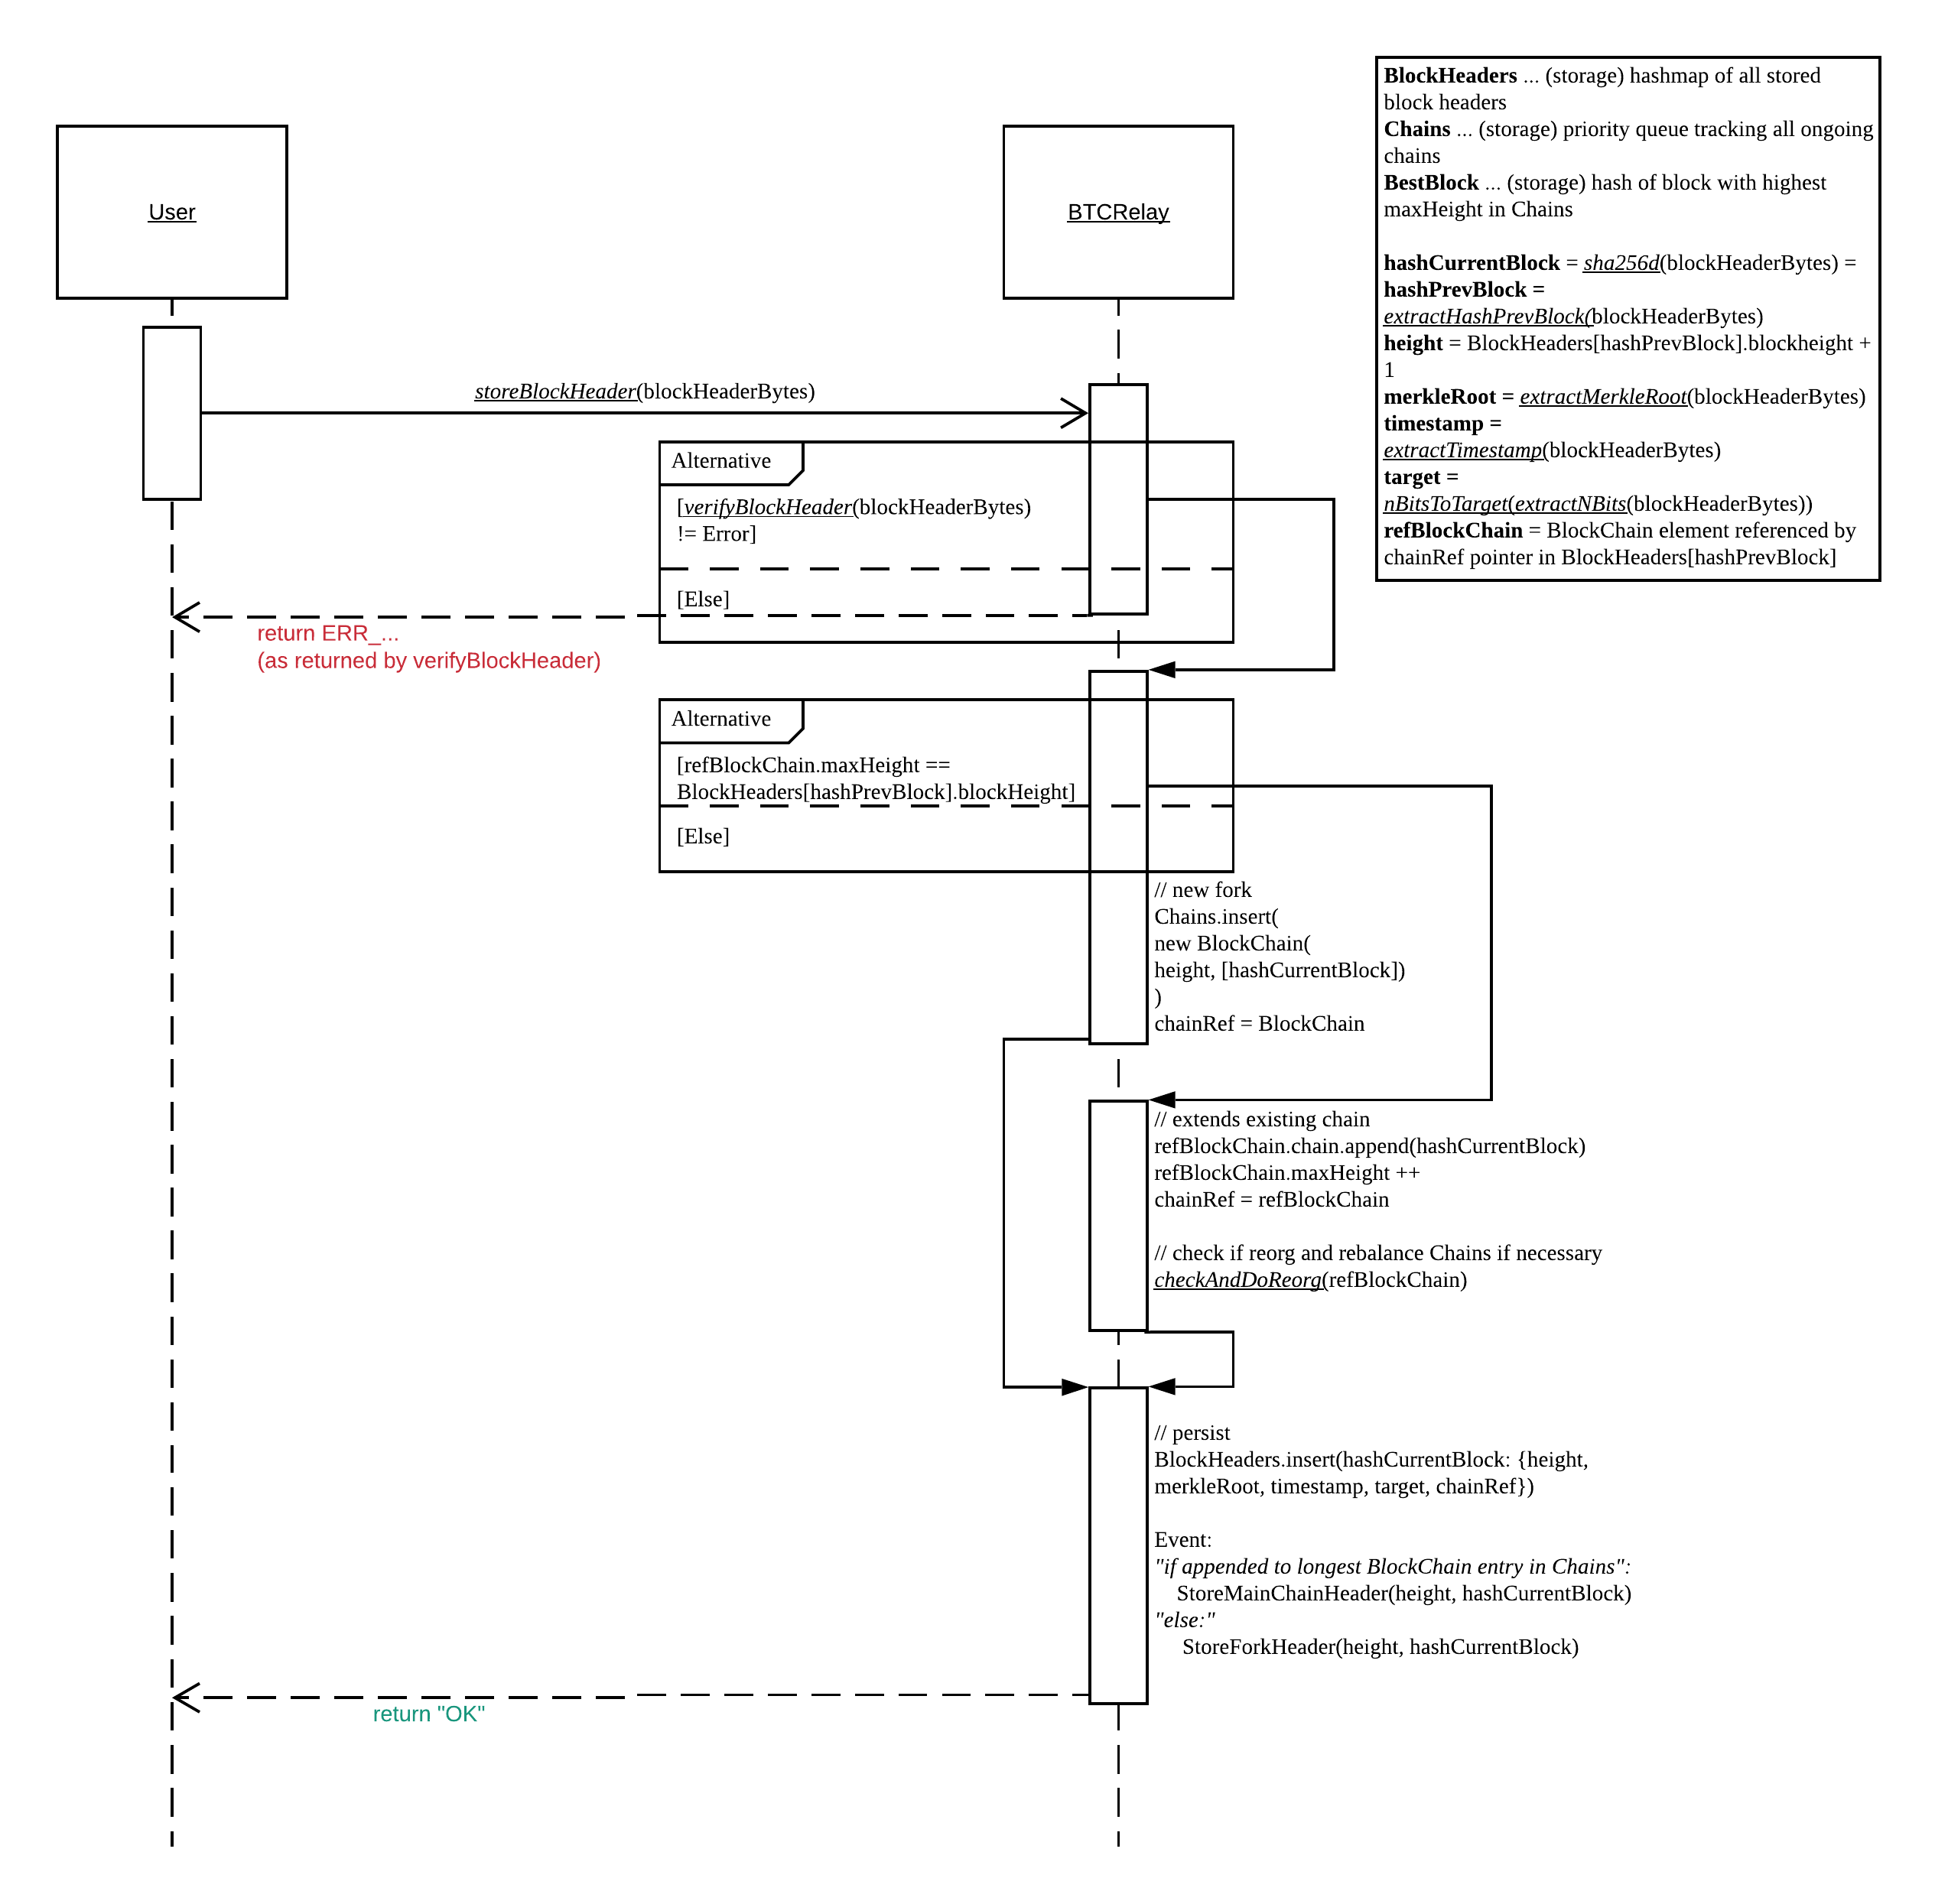 storeBlockHeader sequence diagram